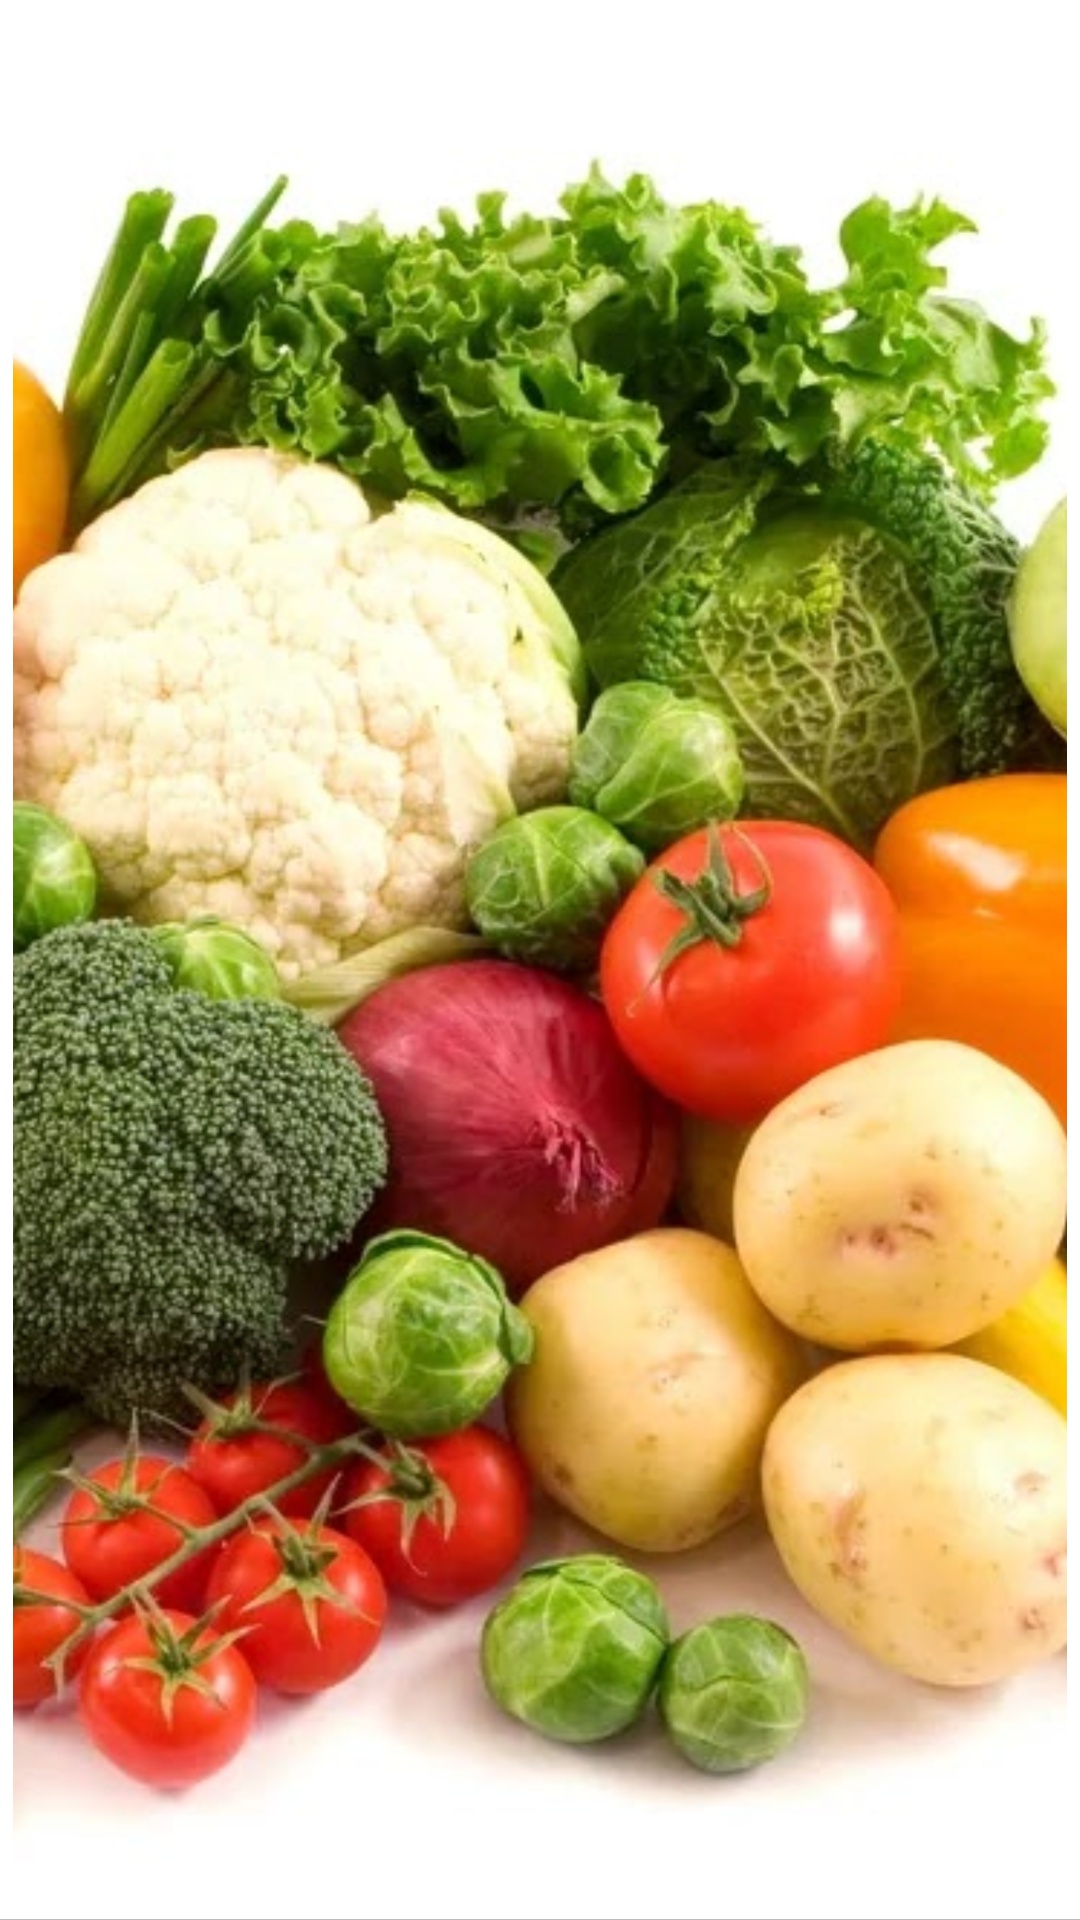 सब्जियों के ये 9 जूस सेहत के लिए हैं फायदेमंद